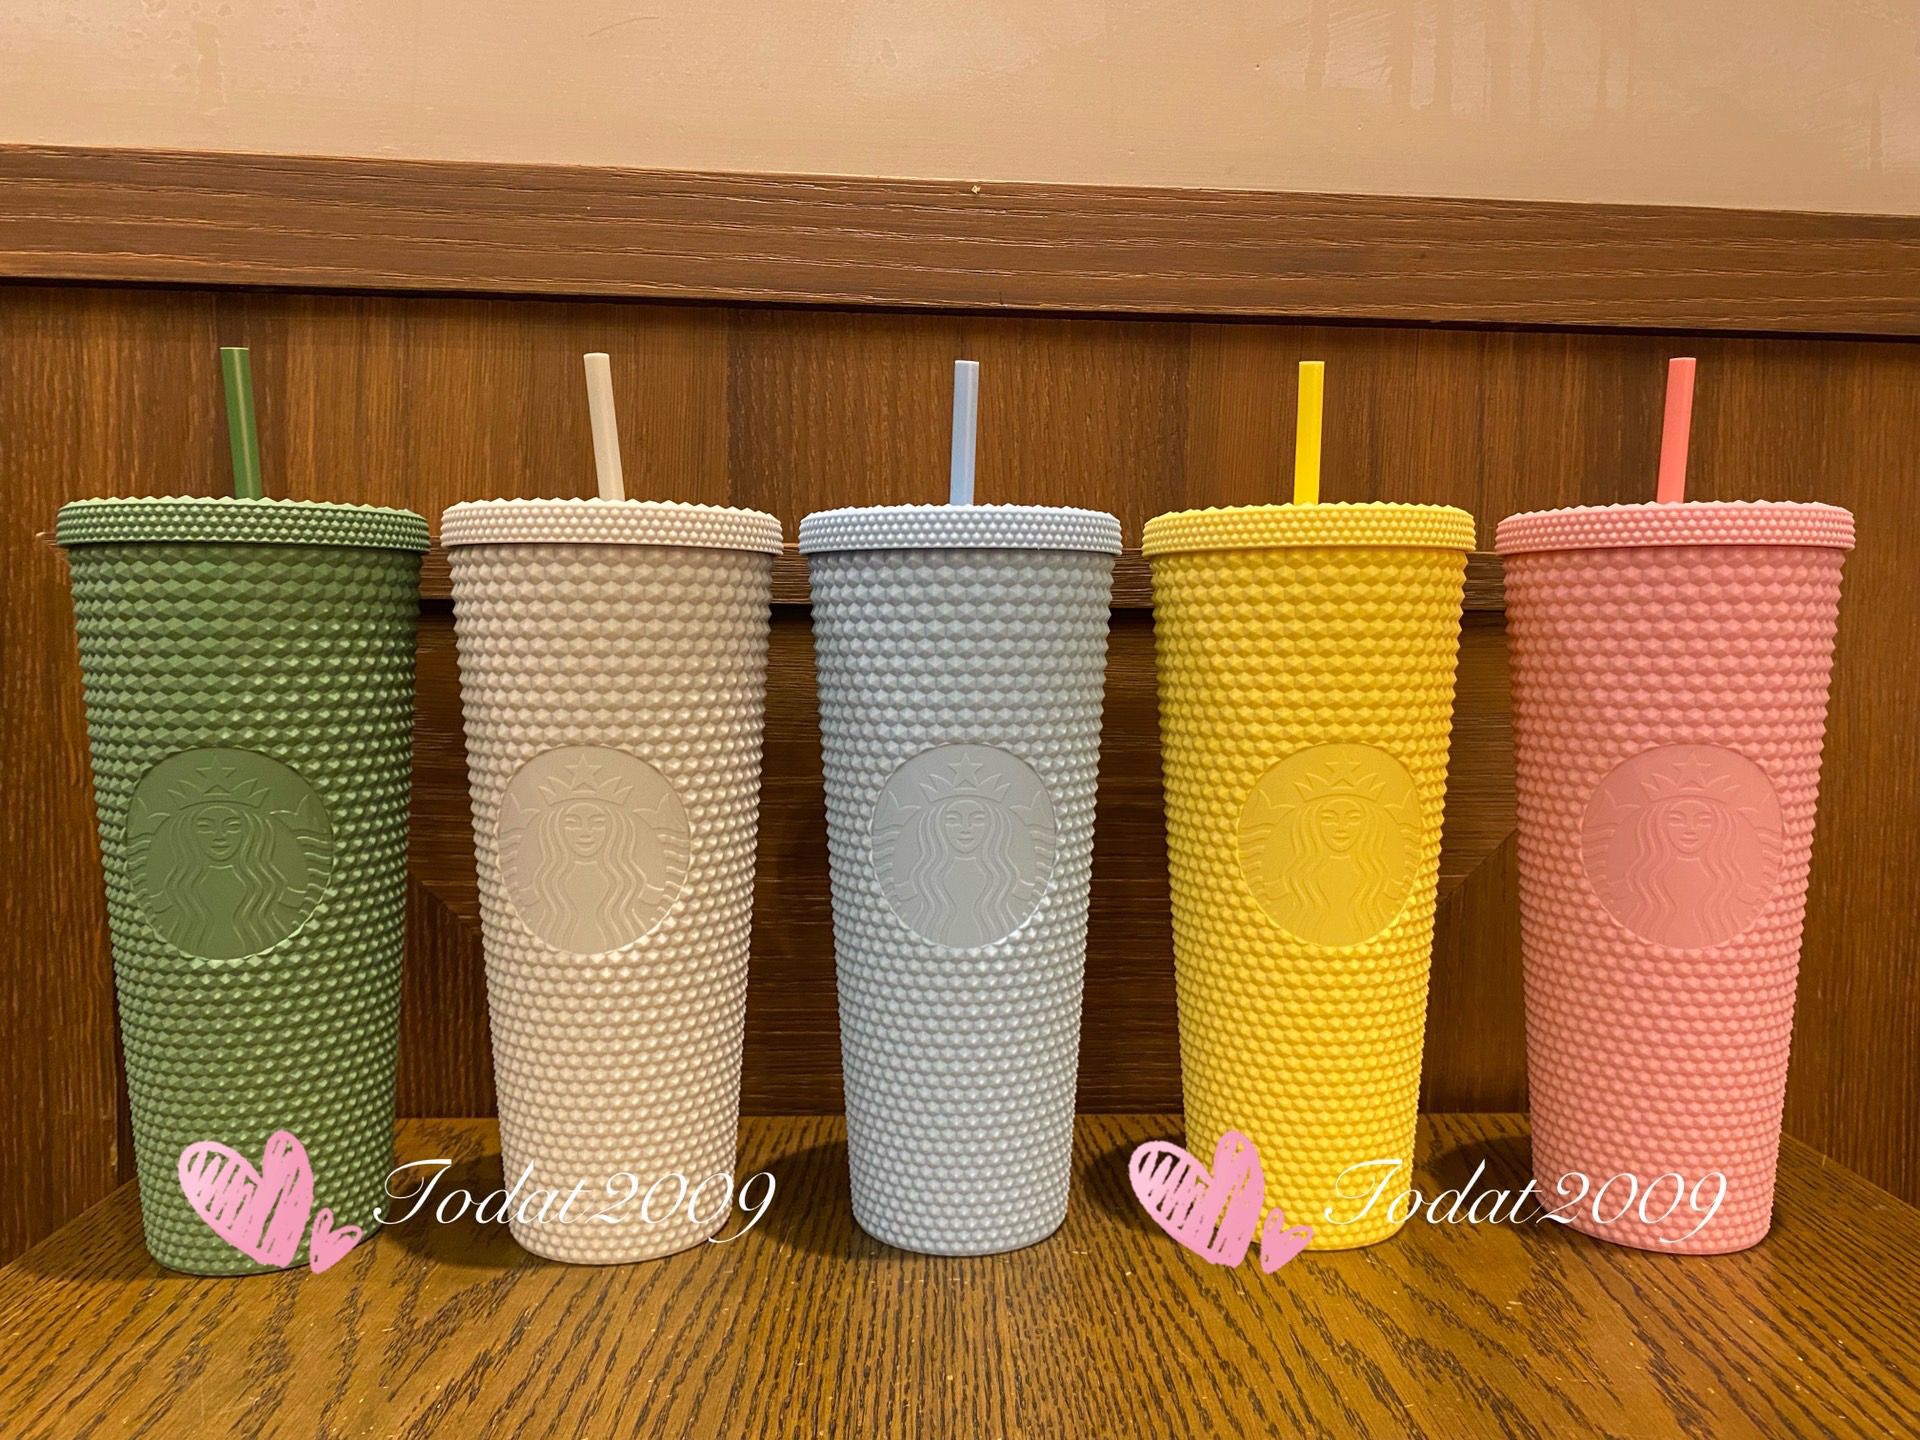 Starbucks Taiwan coral pink / Mint blue 24oz jeweled straw cups